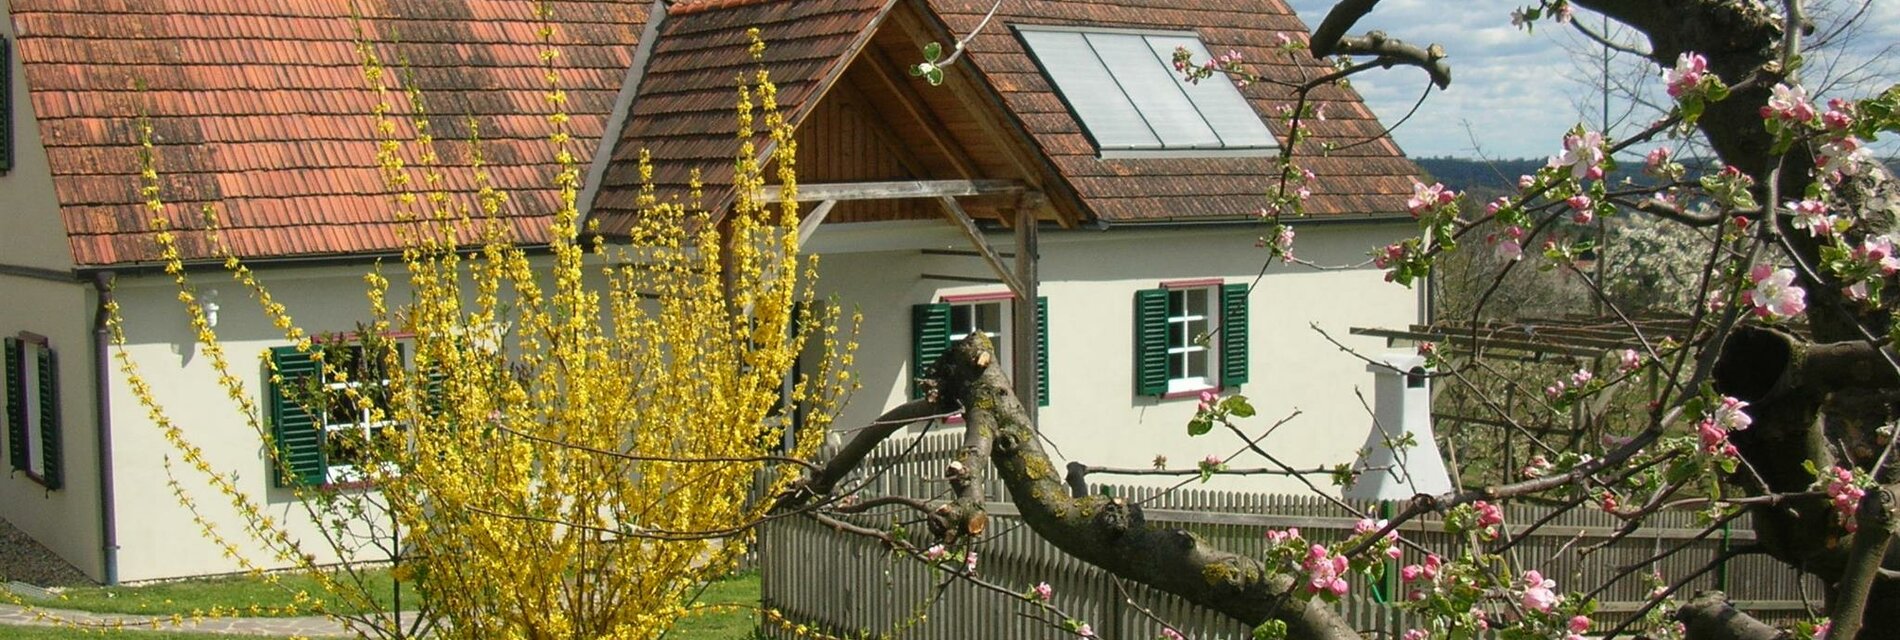 Ferienhaus Amtmann